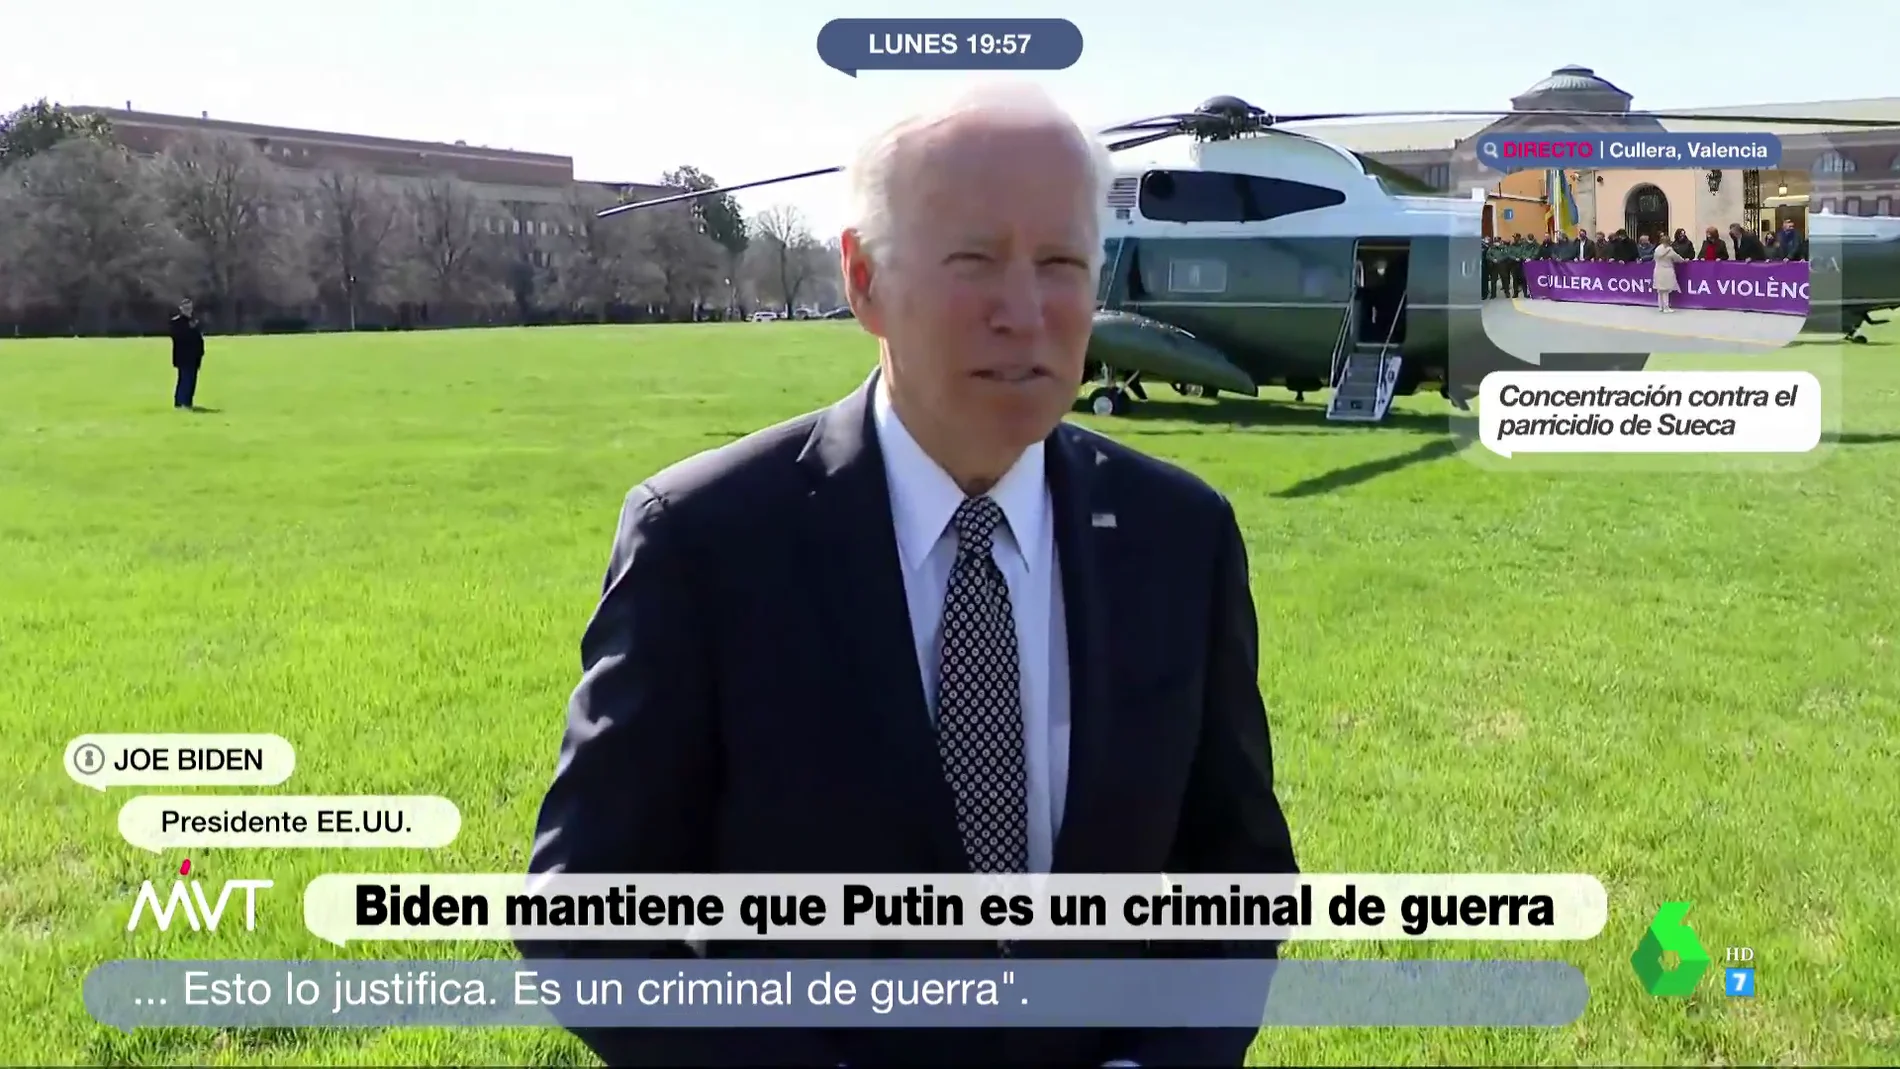 Biden reclama juzgar a Putin por crímenes de guerra mientras Zelenski pide a los medios "documentar" la masacre en Bucha